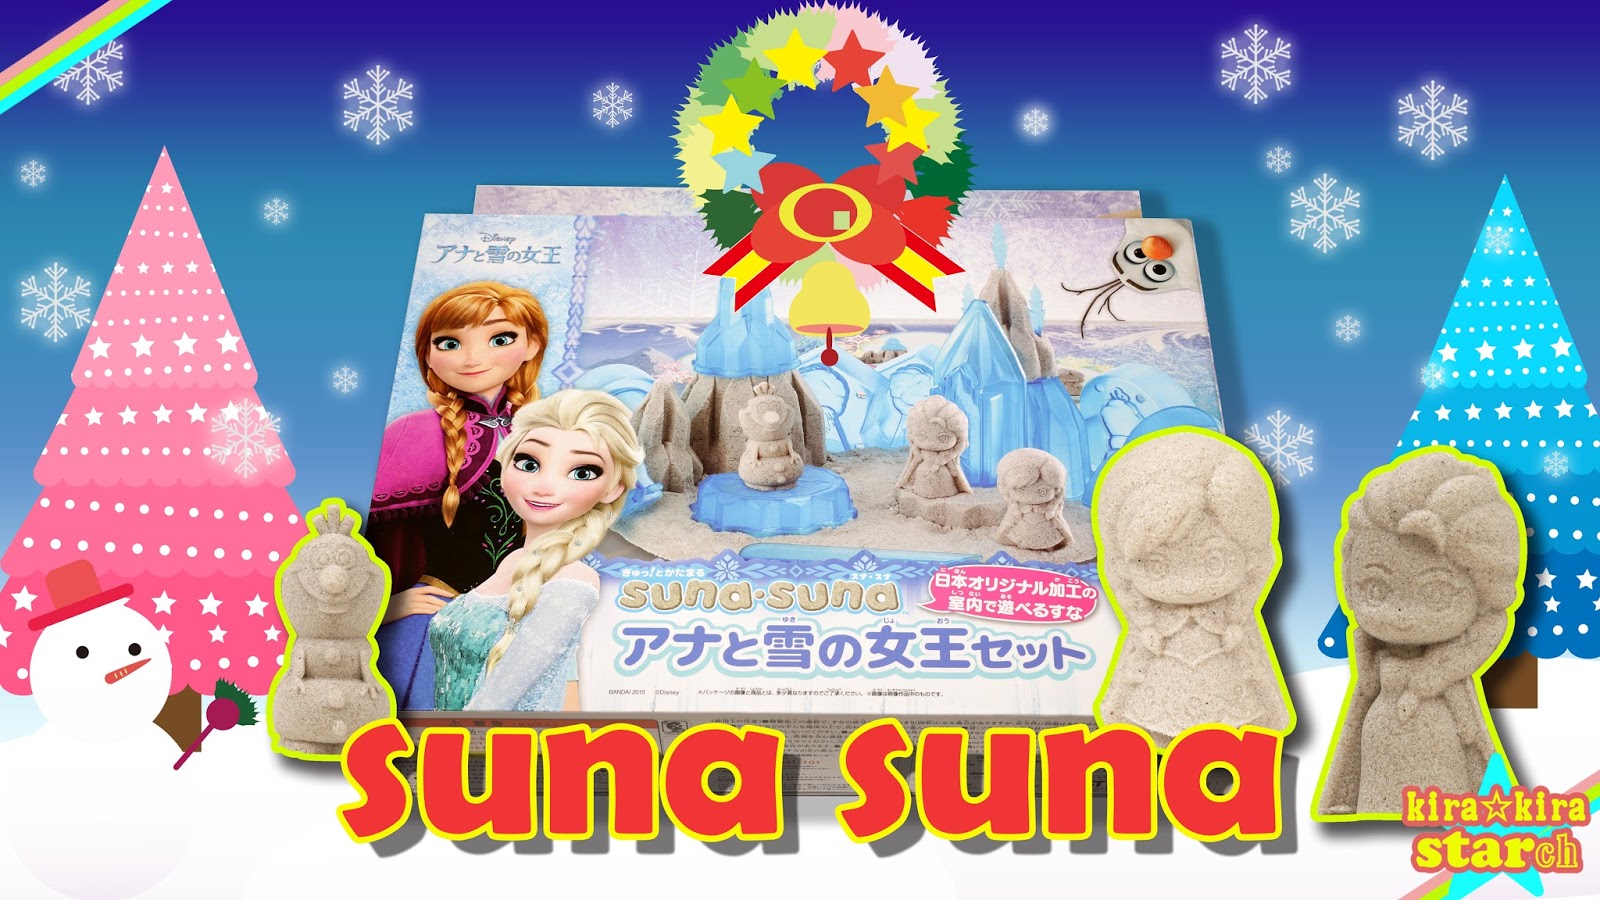 アナと雪の女王のオラフのクリスマス編 第一話 Sunasuna すなすな アナと雪の女王セット スナスナ アナ雪 で遊ぶ Kirakirastarch S Blog